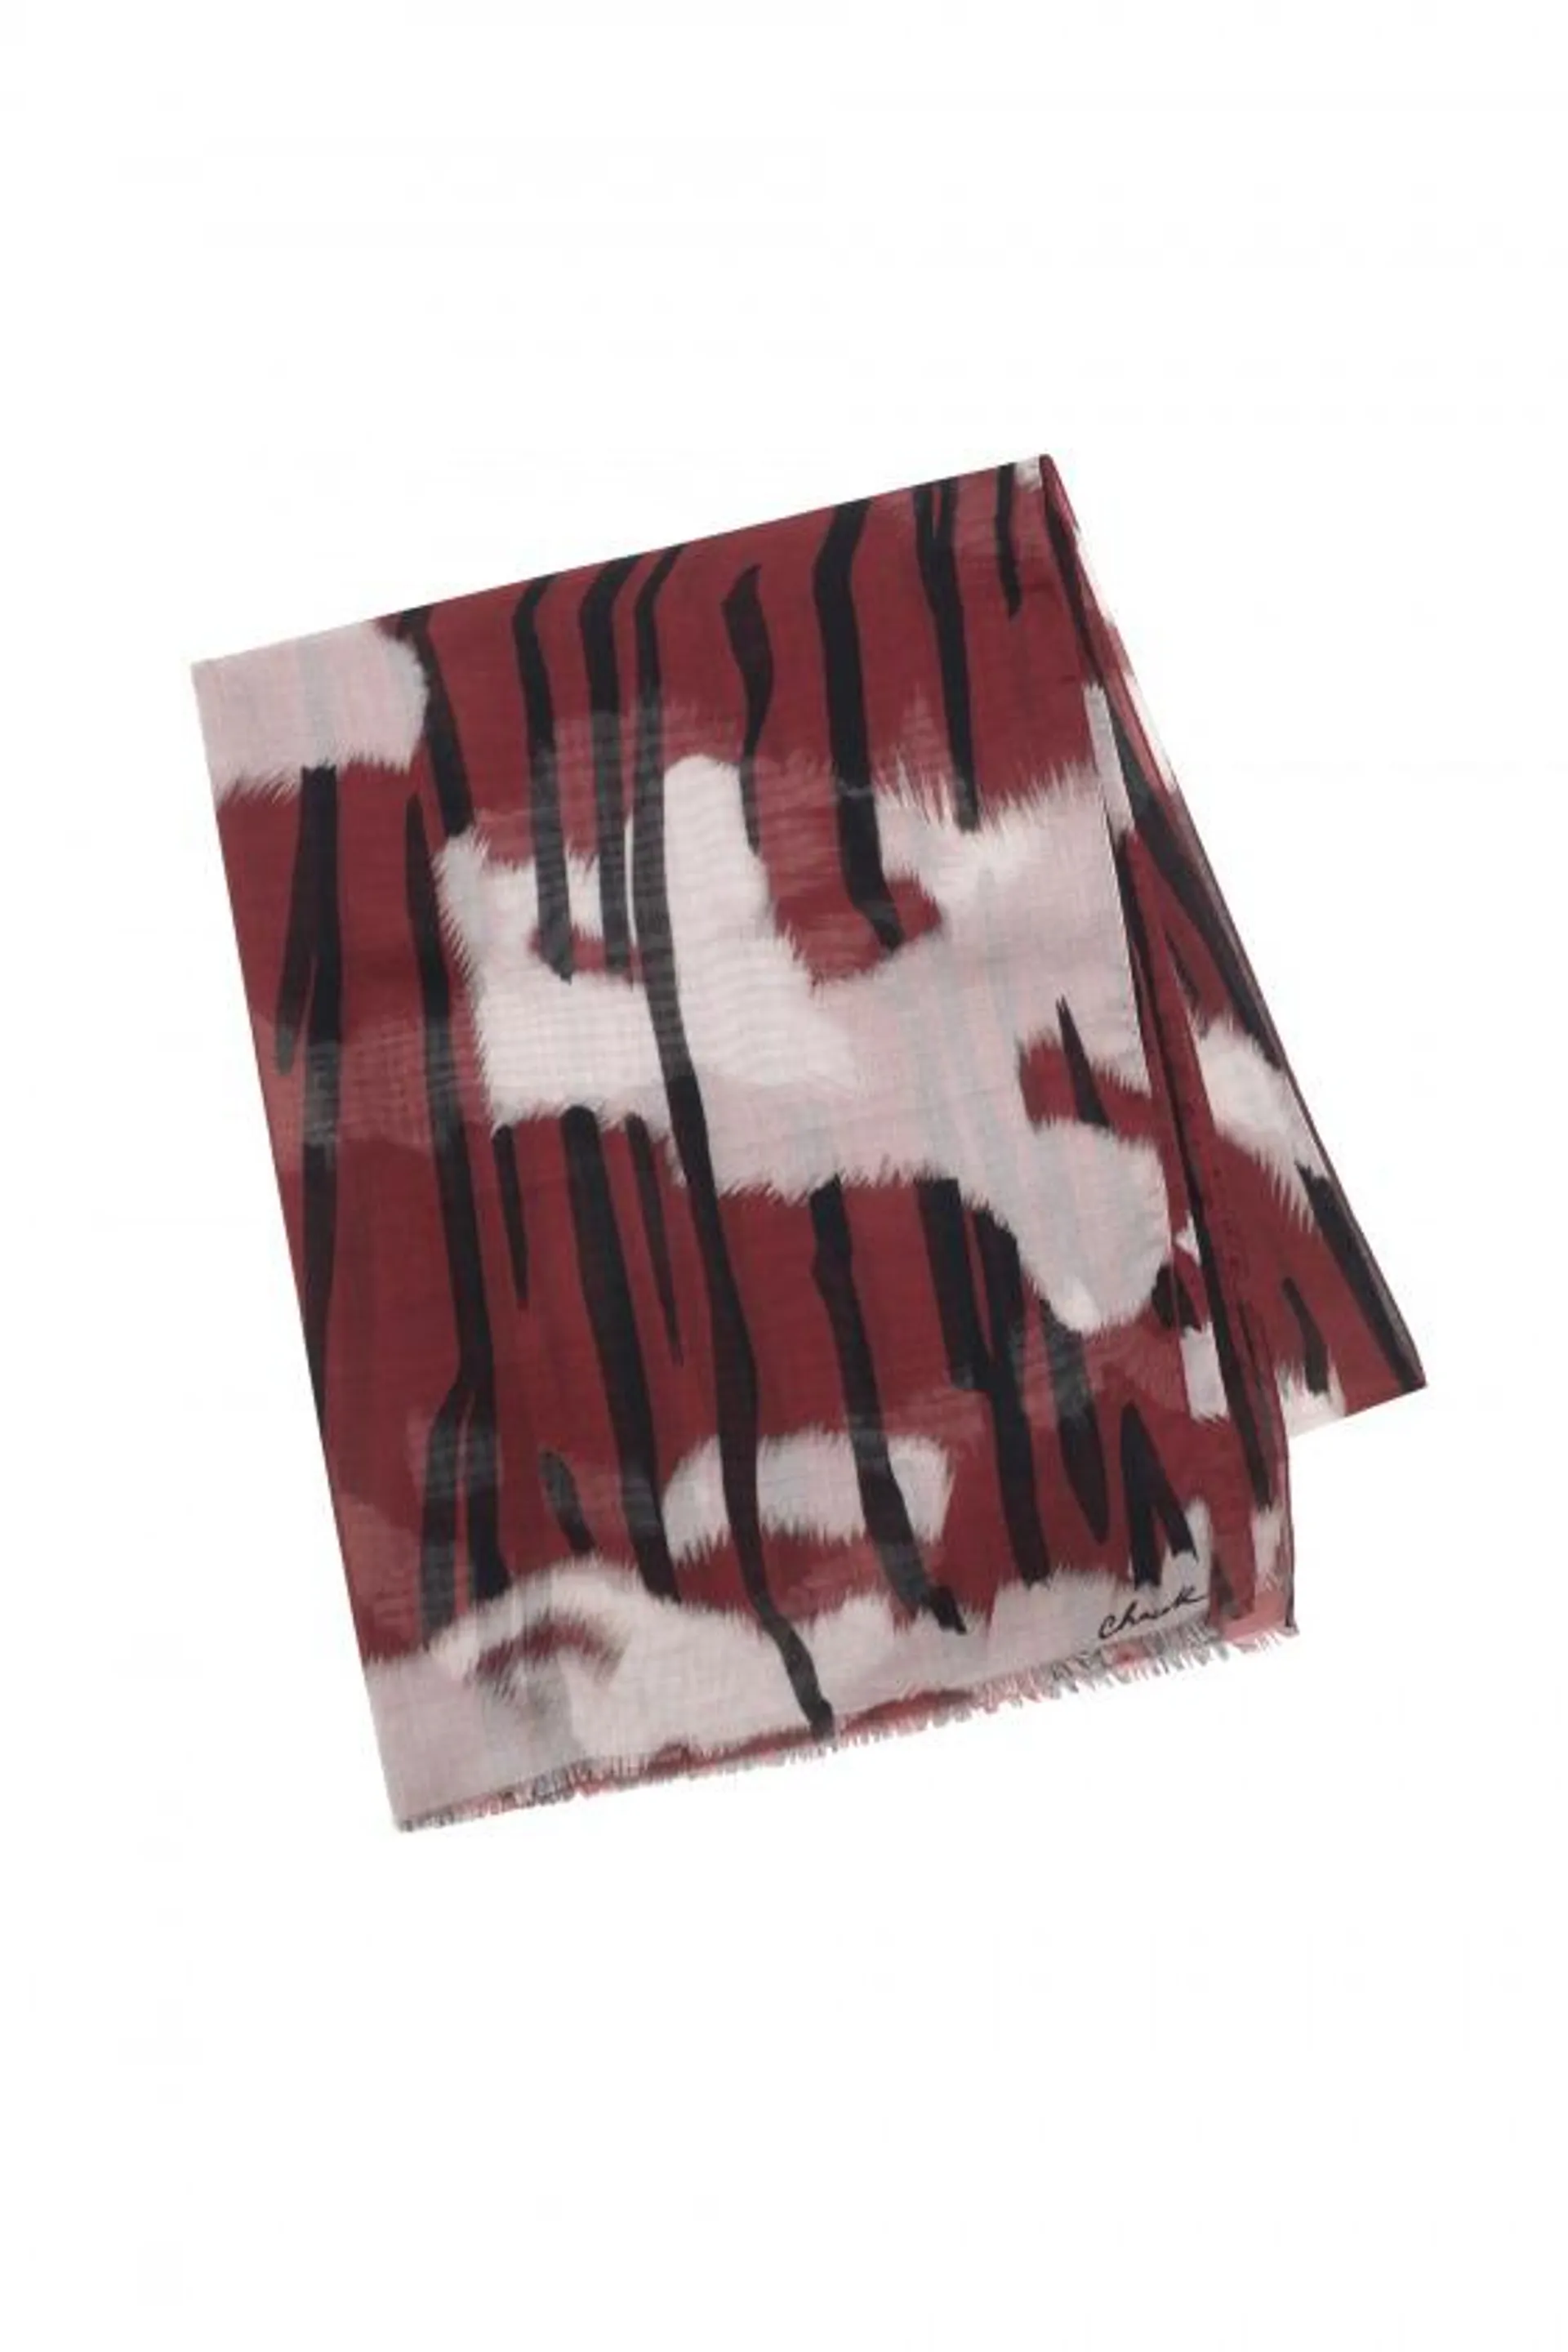 KAOLA rouge - Etole en modal et soie imprimée 70 x 212